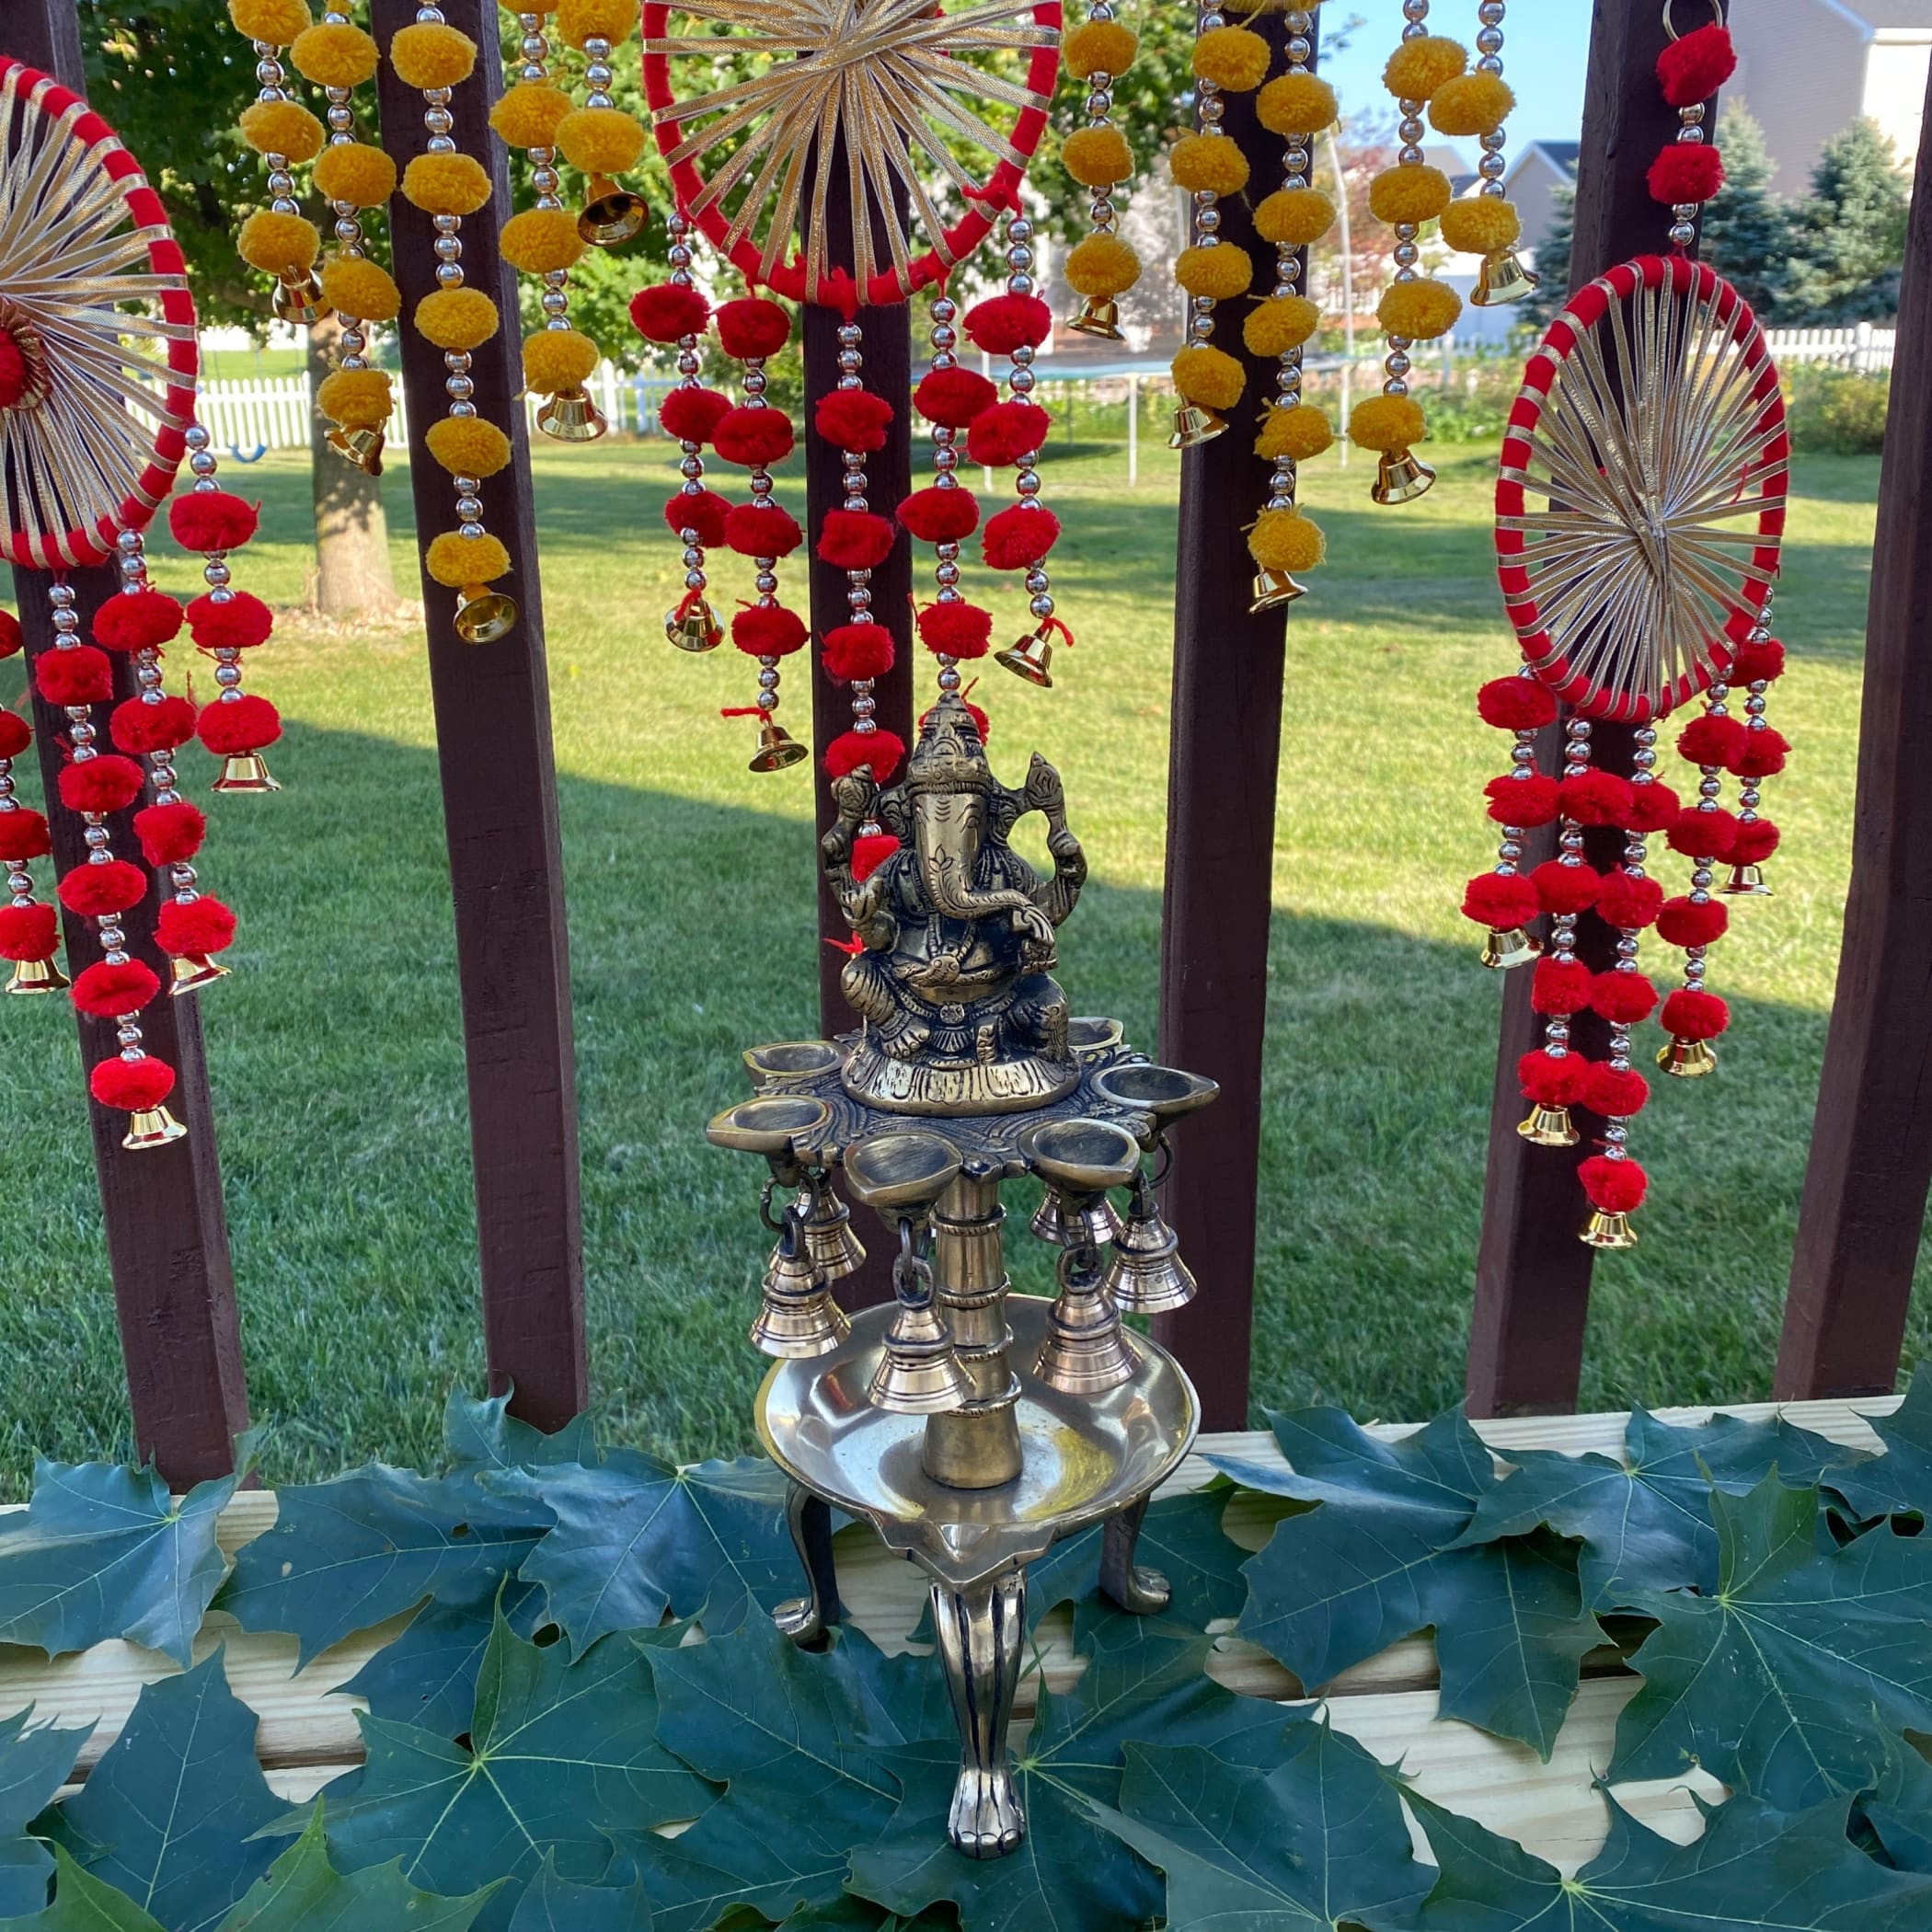 Ganesha brass oil tall diya samai diwali decor lamp altar